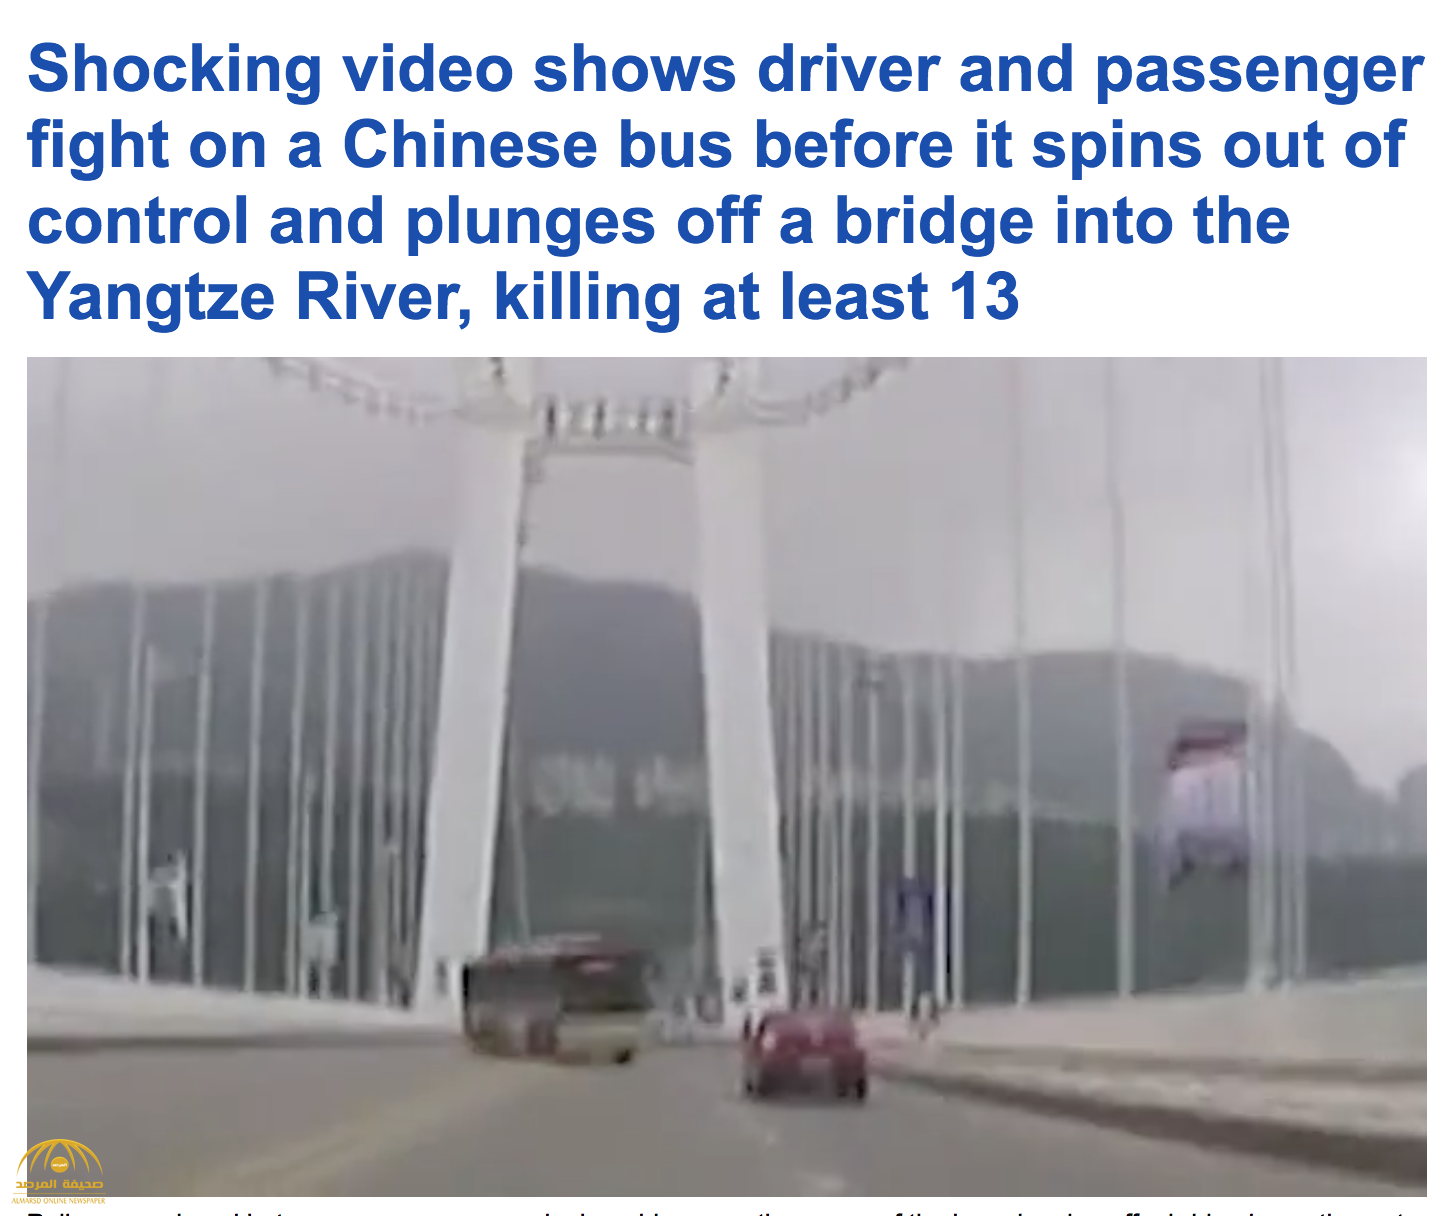 شاهد: لحظة سقوط حافلة صينية في النهر ومقتل 13 راكبًا بسبب ما فعلته "امرأة" بالسائق أثناء القيادة!